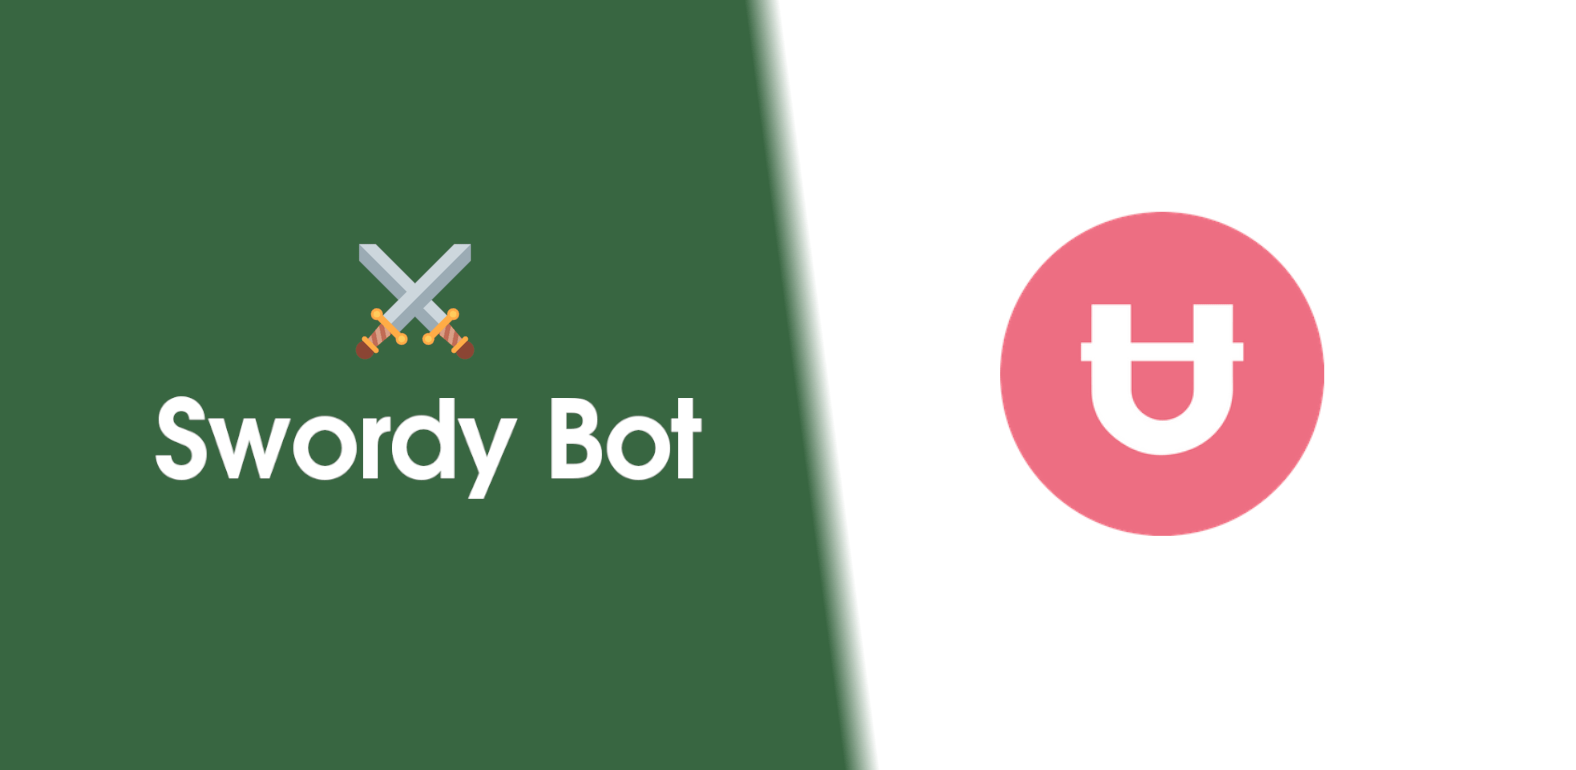 Introducing Swordy Bot